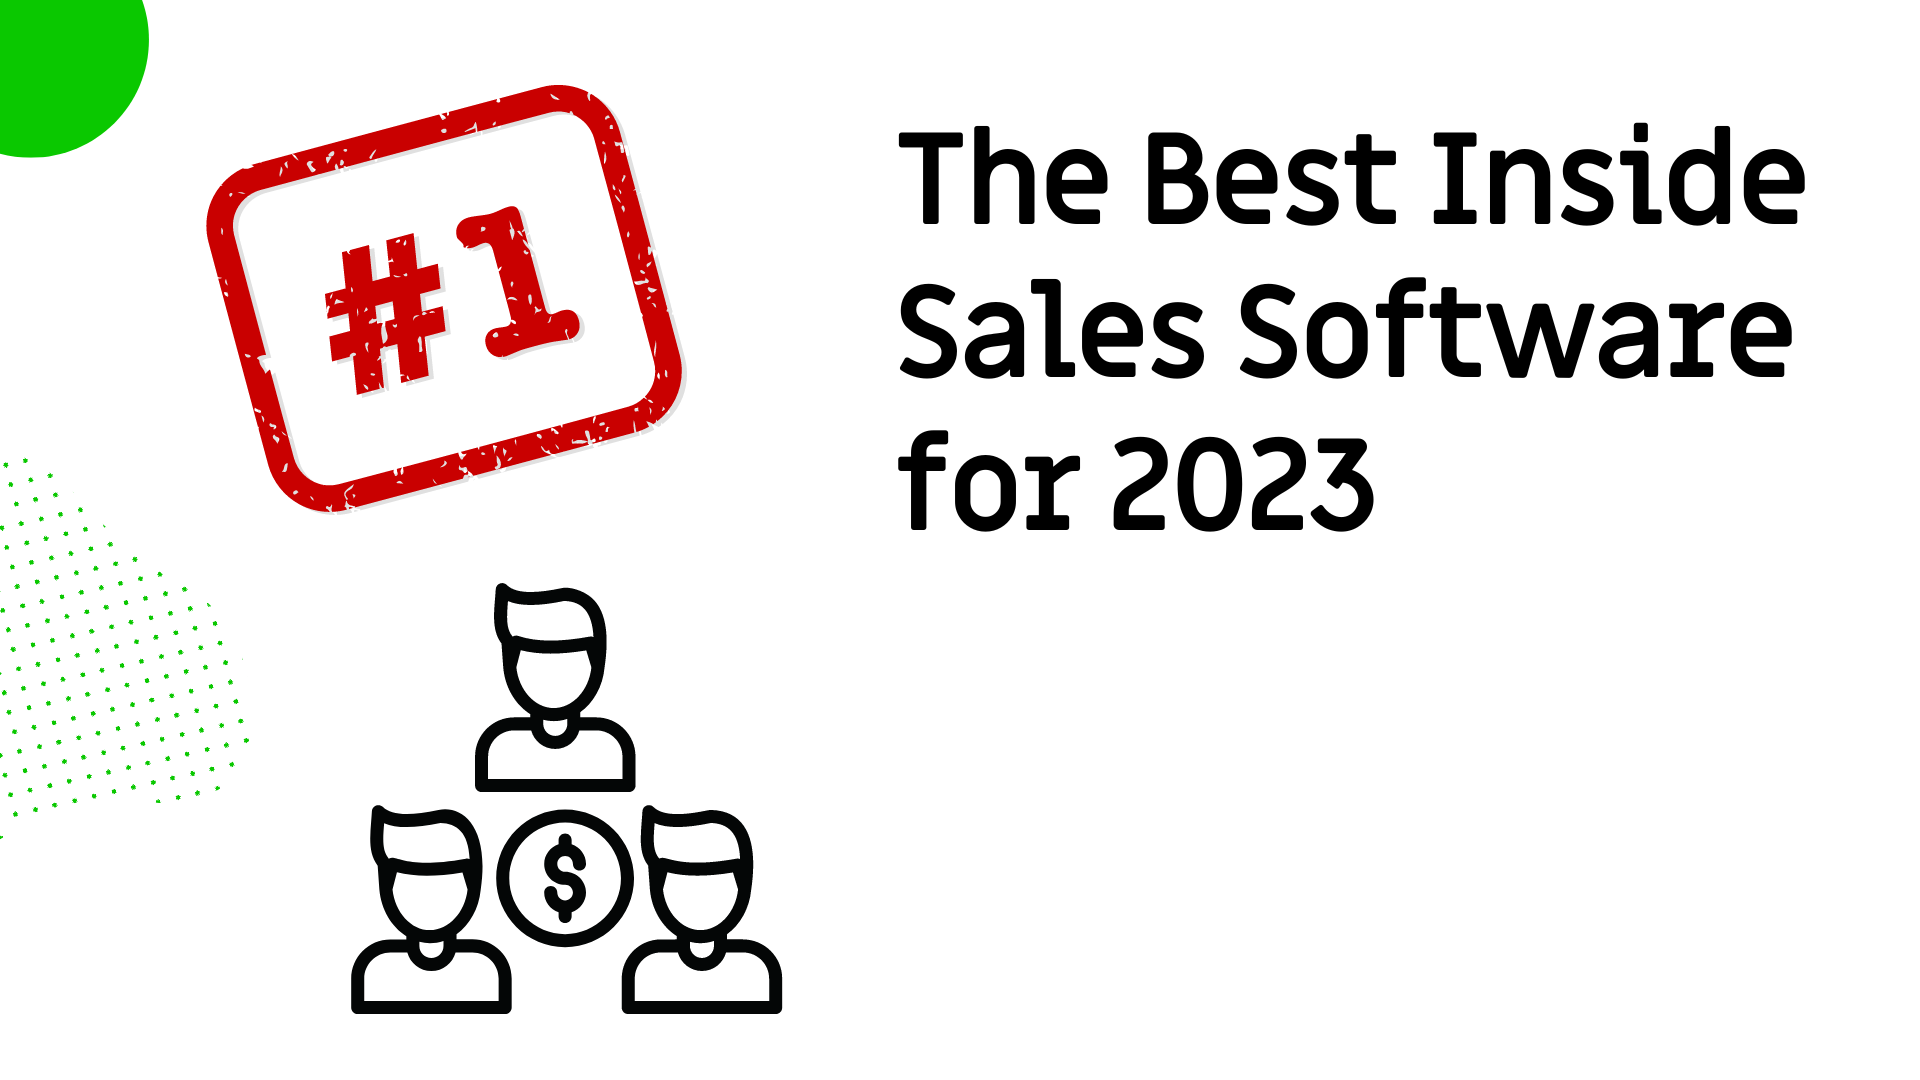 Best Inside Sales Software for 2023